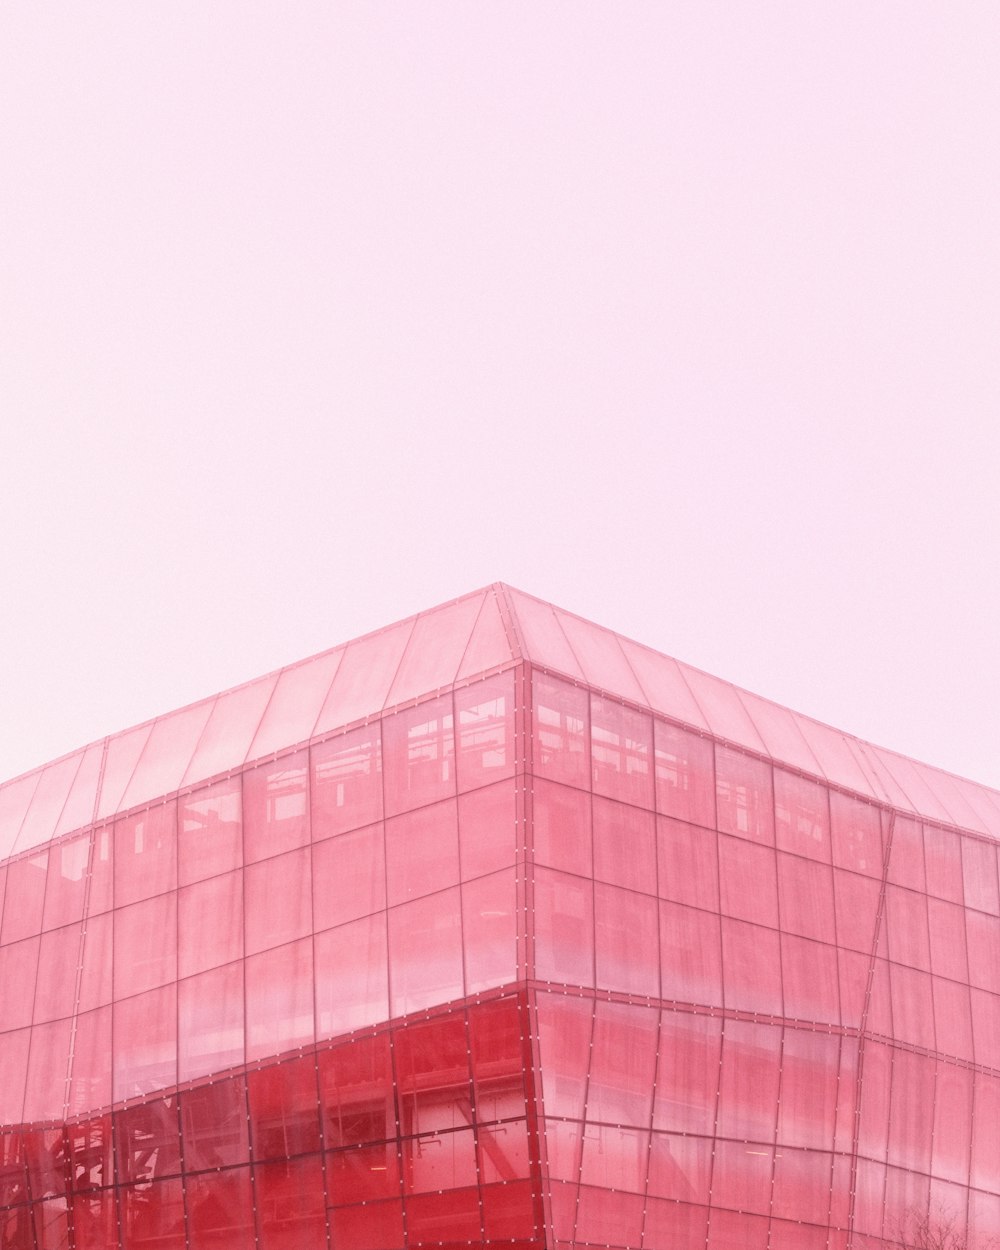 un bâtiment en verre rouge surmonté d’une horloge